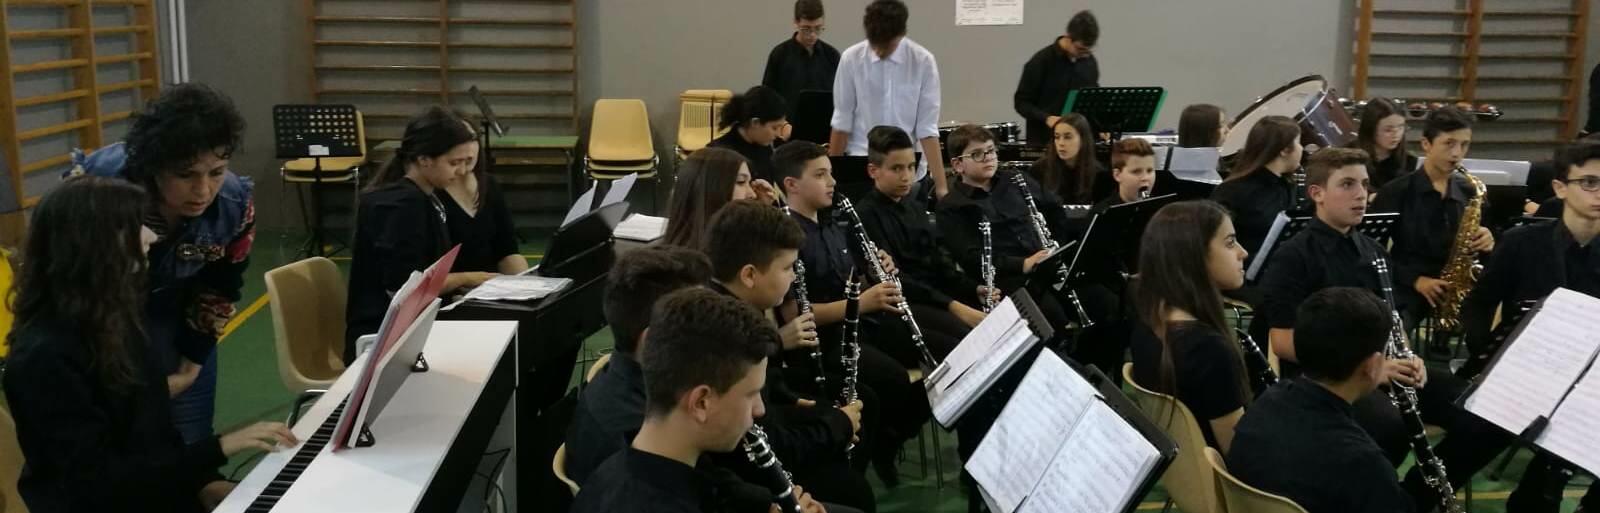 Brillante successo per l’orchestra della Scuola Secondaria di Gioiosa Ionica